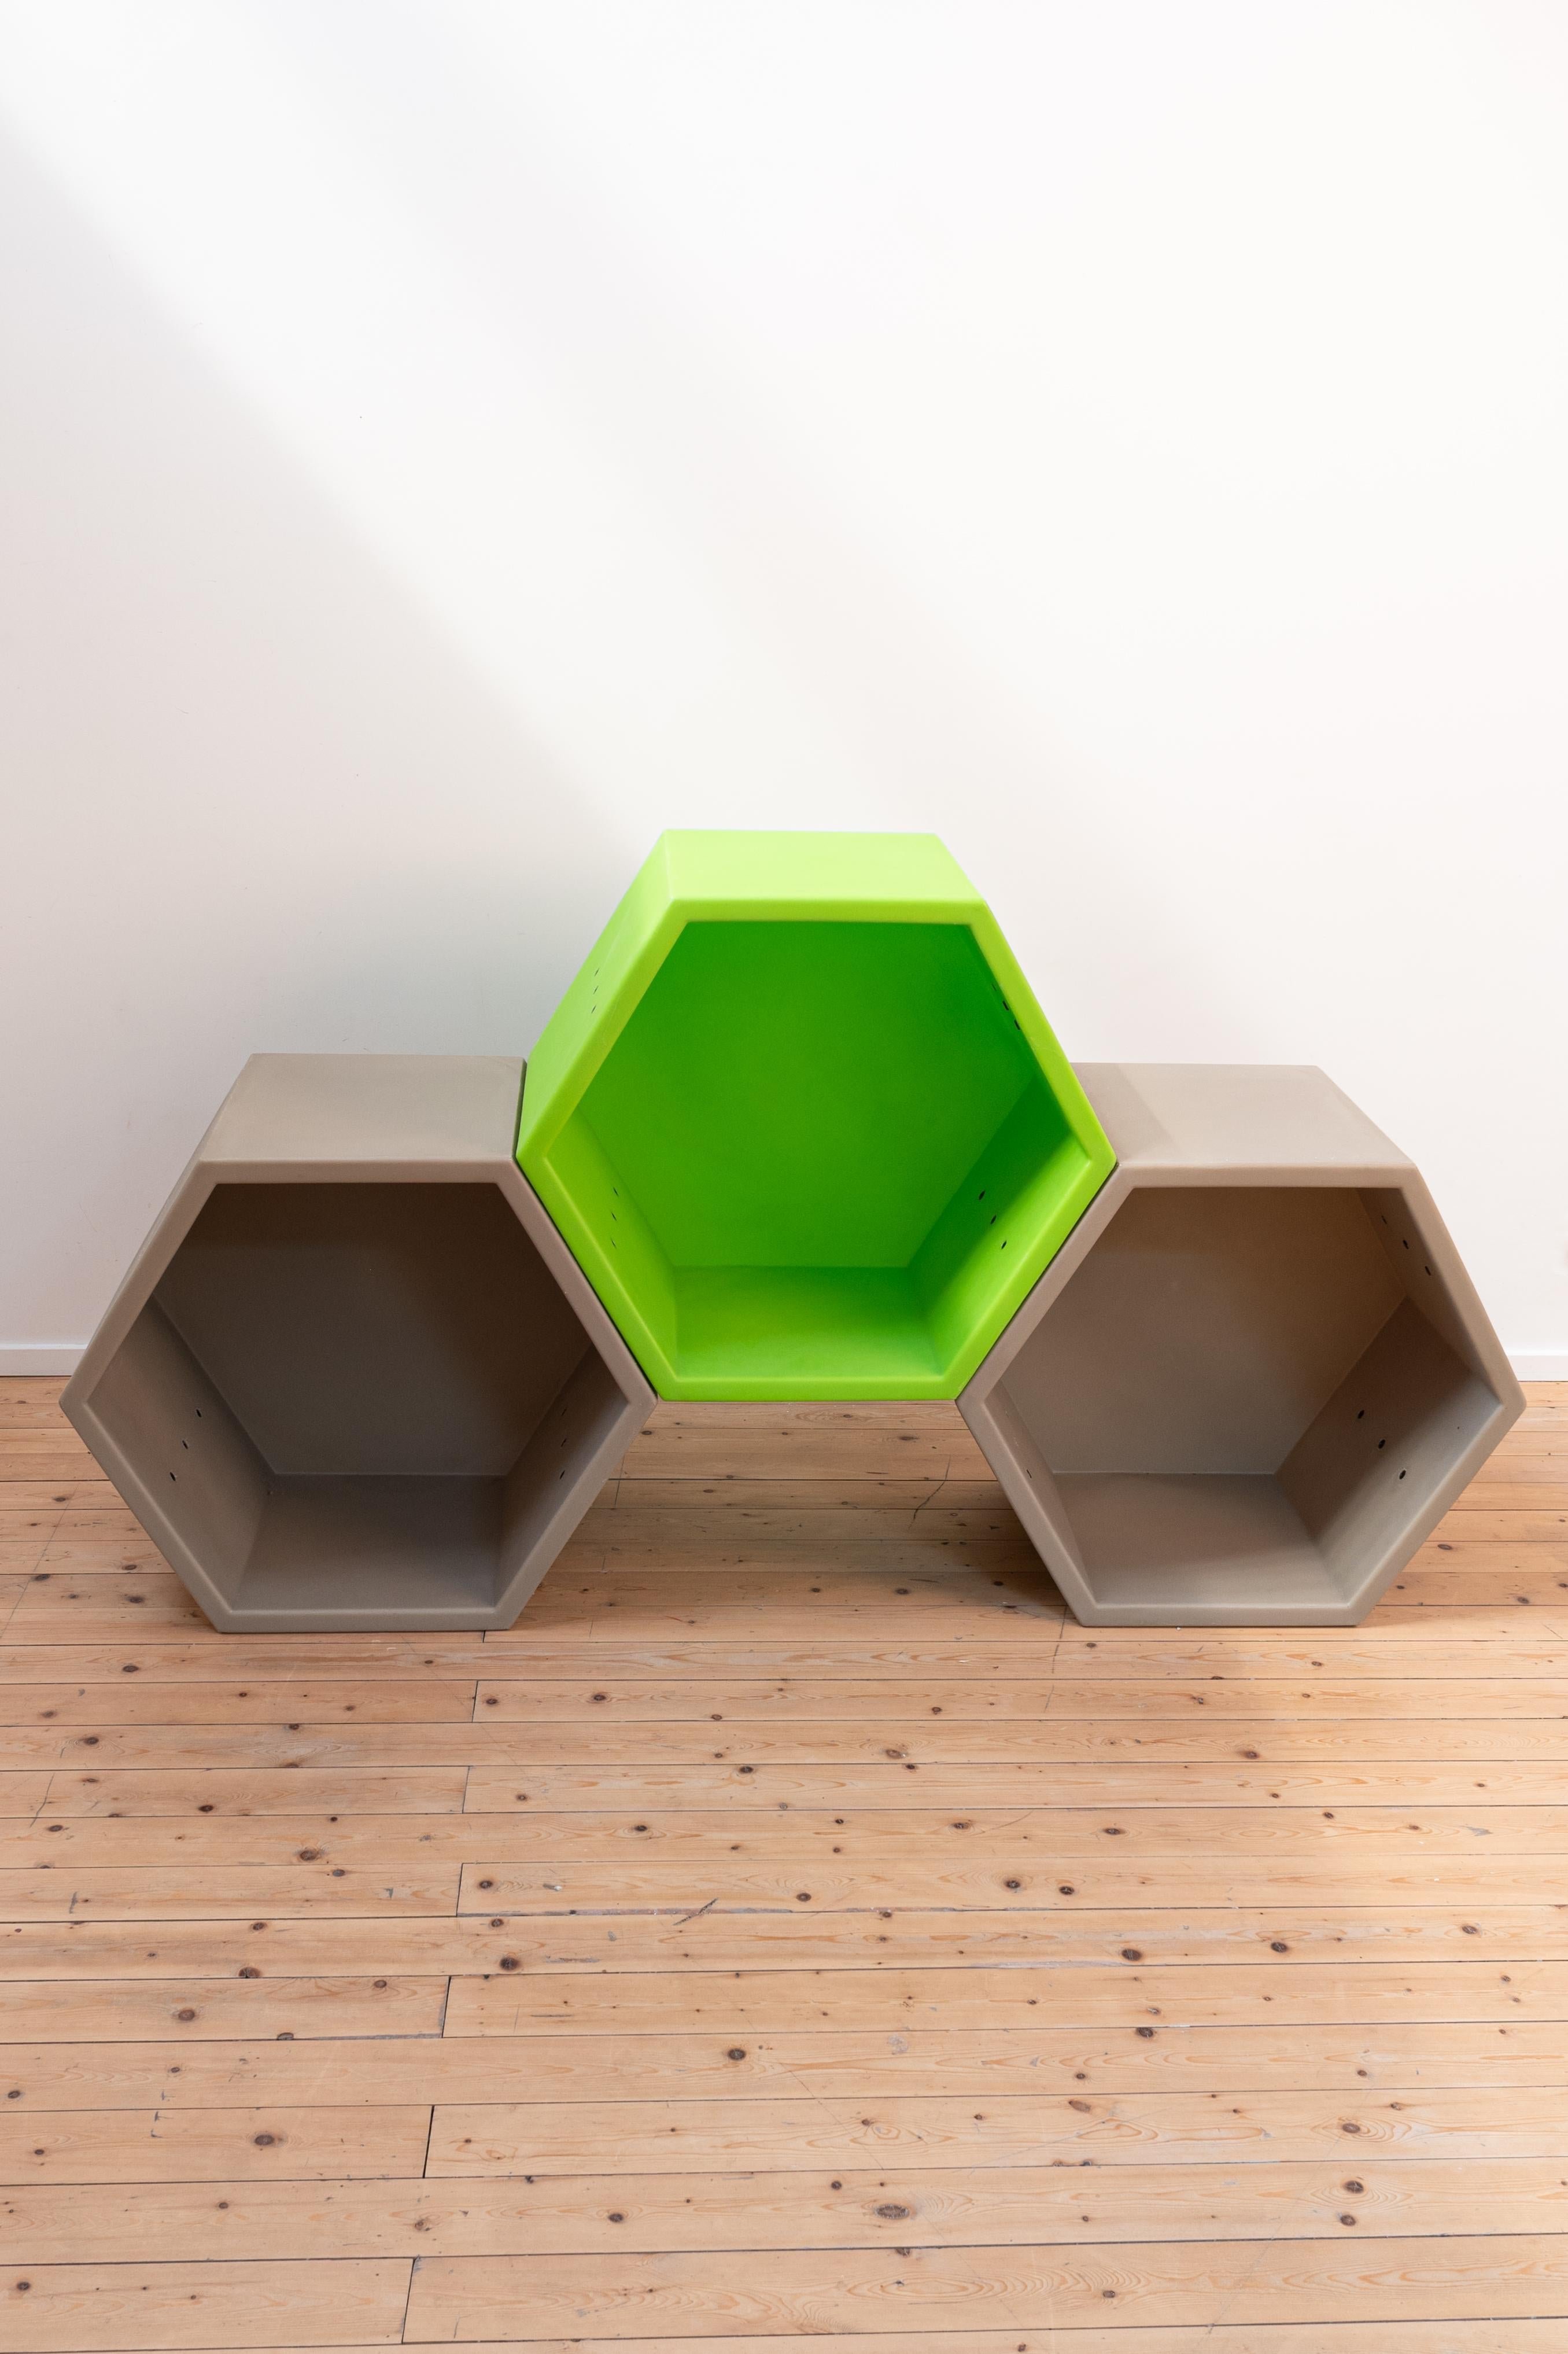 Honeycomb par Quinze & Milan et designer : Clive Wilkinson

Le module comprend 1 module vert et 2 modules gris. Le module noir est endommagé et est ajouté gratuitement (si vous le souhaitez) si vous achetez le set. 

